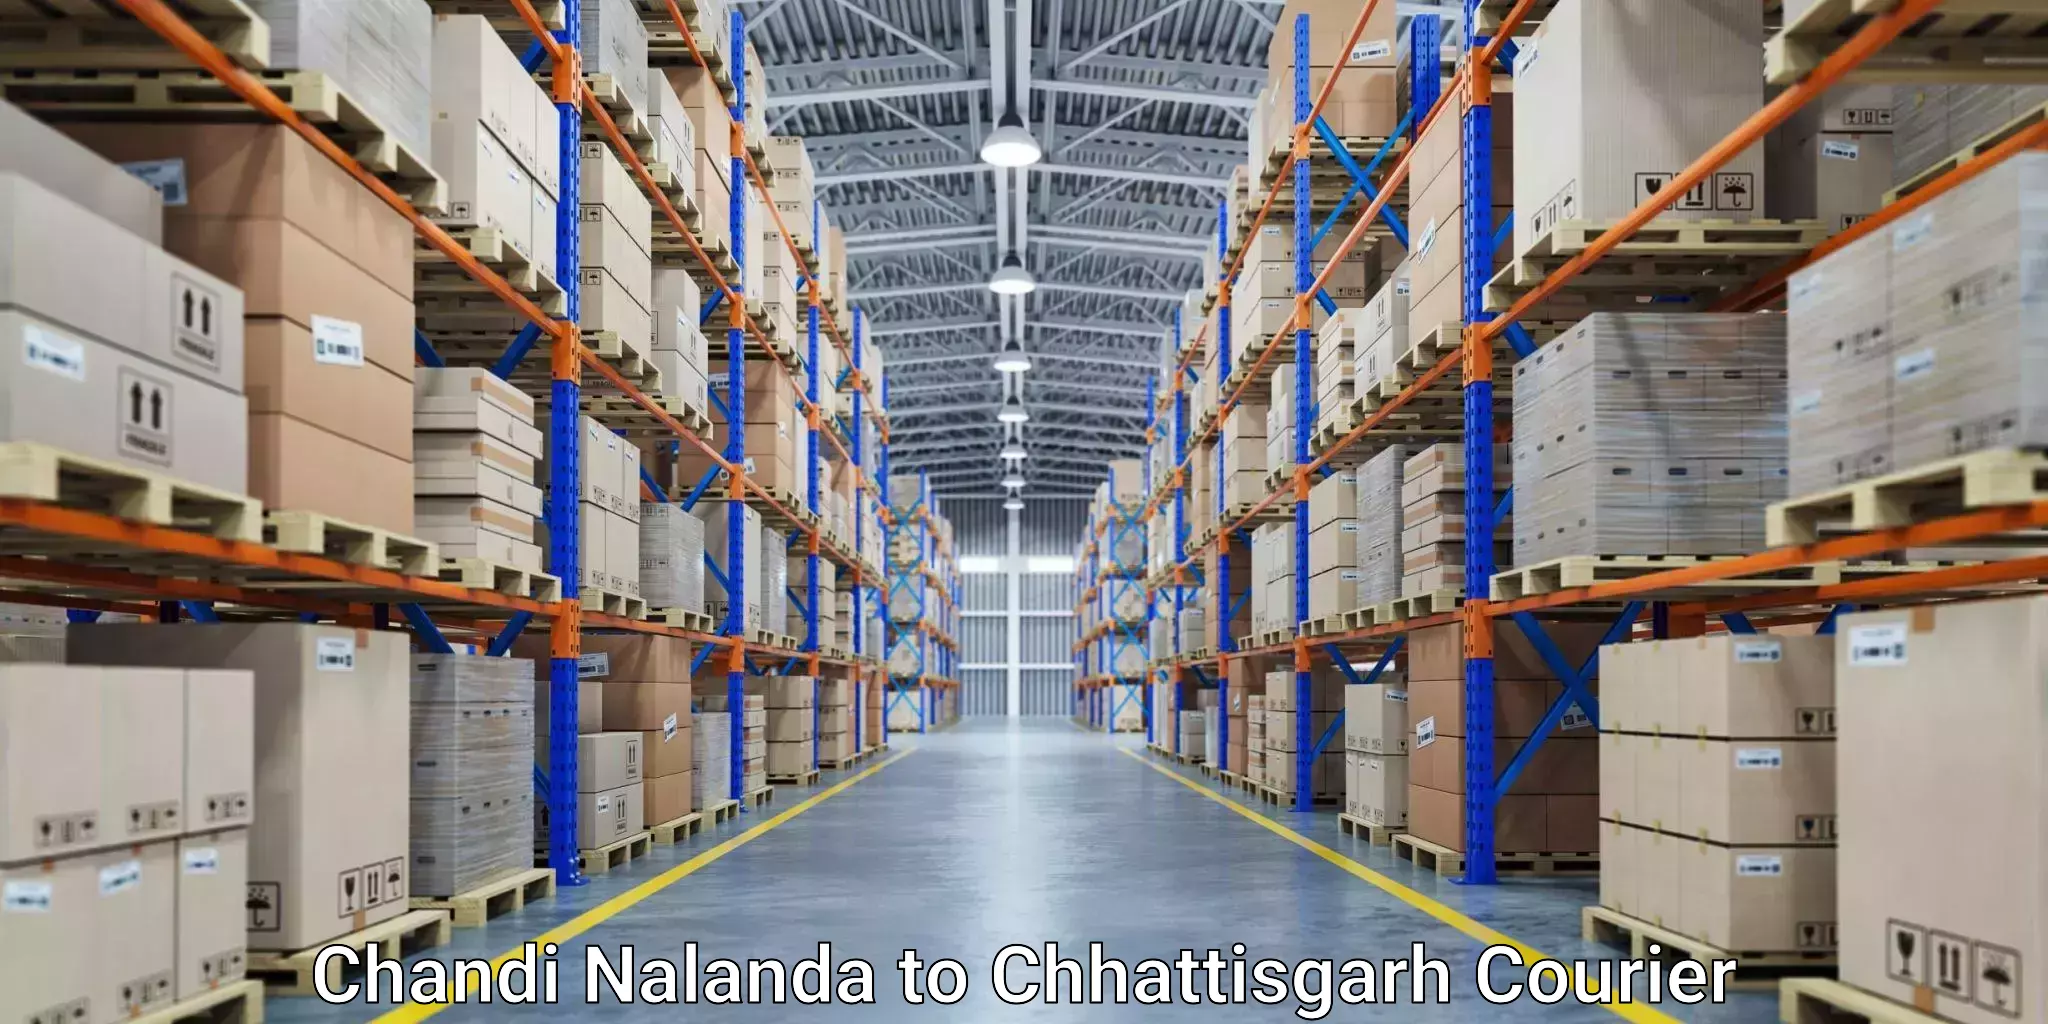 Customer-centric shipping Chandi Nalanda to Raigarh